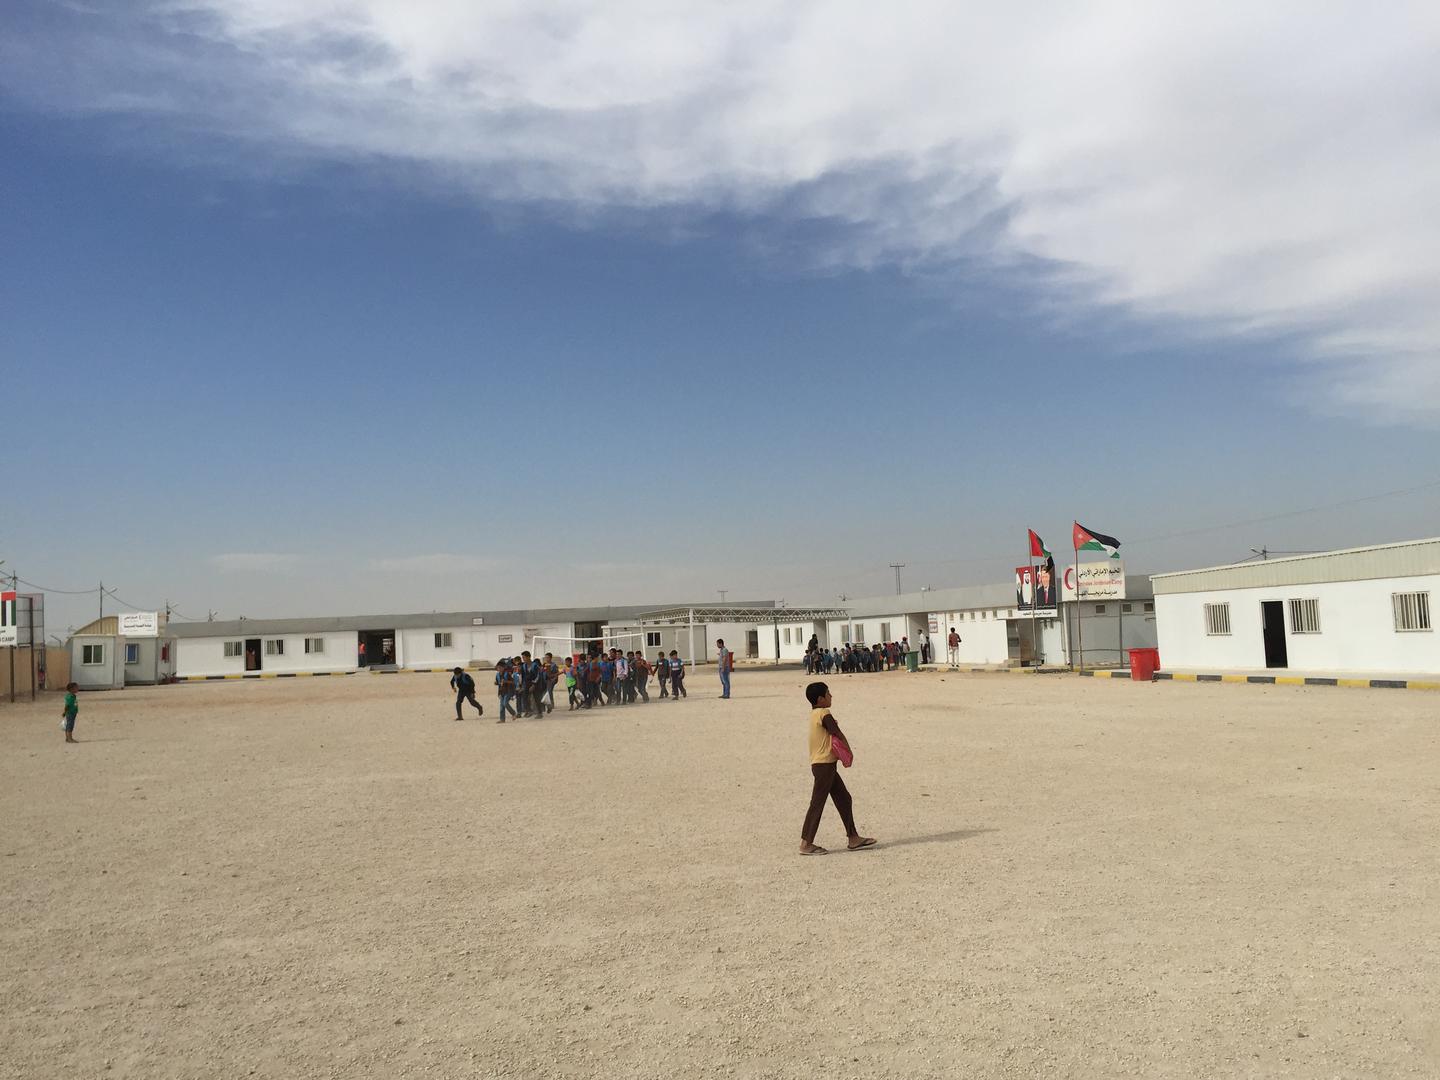 أطفال سوريون يخرجون من المدرسة في المخيم الإماراتي الأردني، شمالي الأردن، 21 أكتوبر/تشرين الأول 2015. تُشغّل وزارة التربية والتعليم الأردنية المدارس في مخيمات اللاجئين، وتمدها بمعلمين وإداريين. بيل فان إسفلد/هيومن رايتس ووتش 